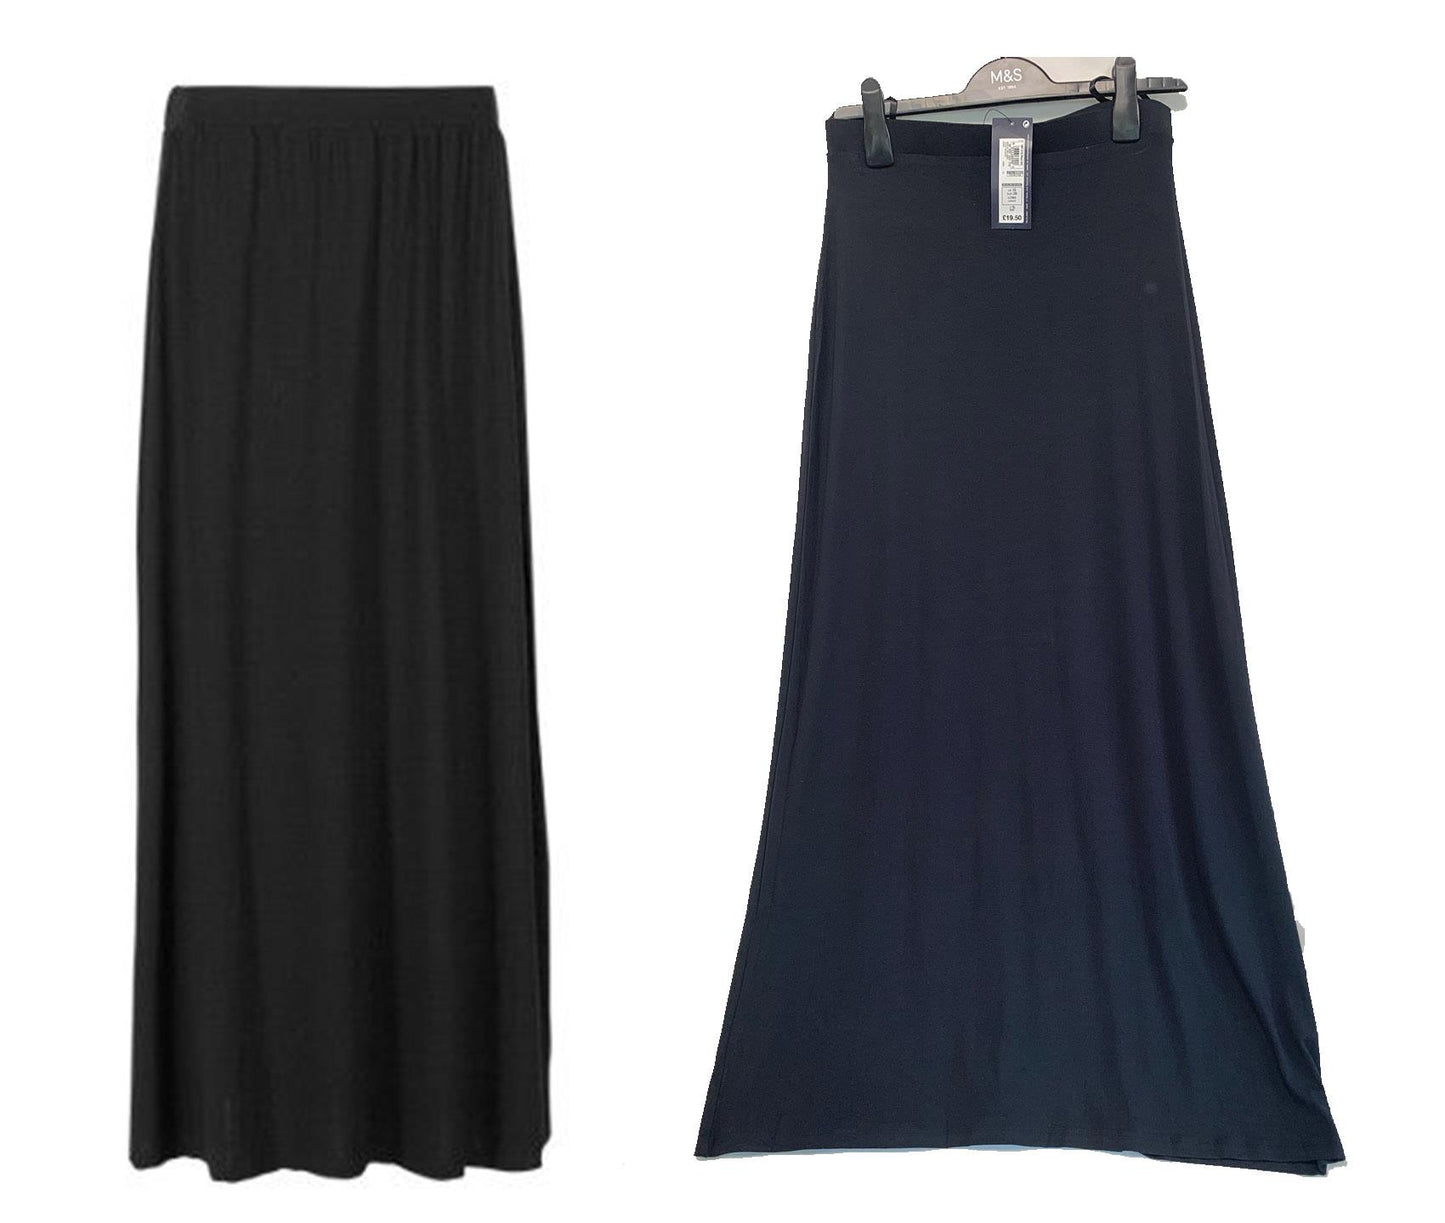 Long Maxi Summer Skirt RRP £19.50